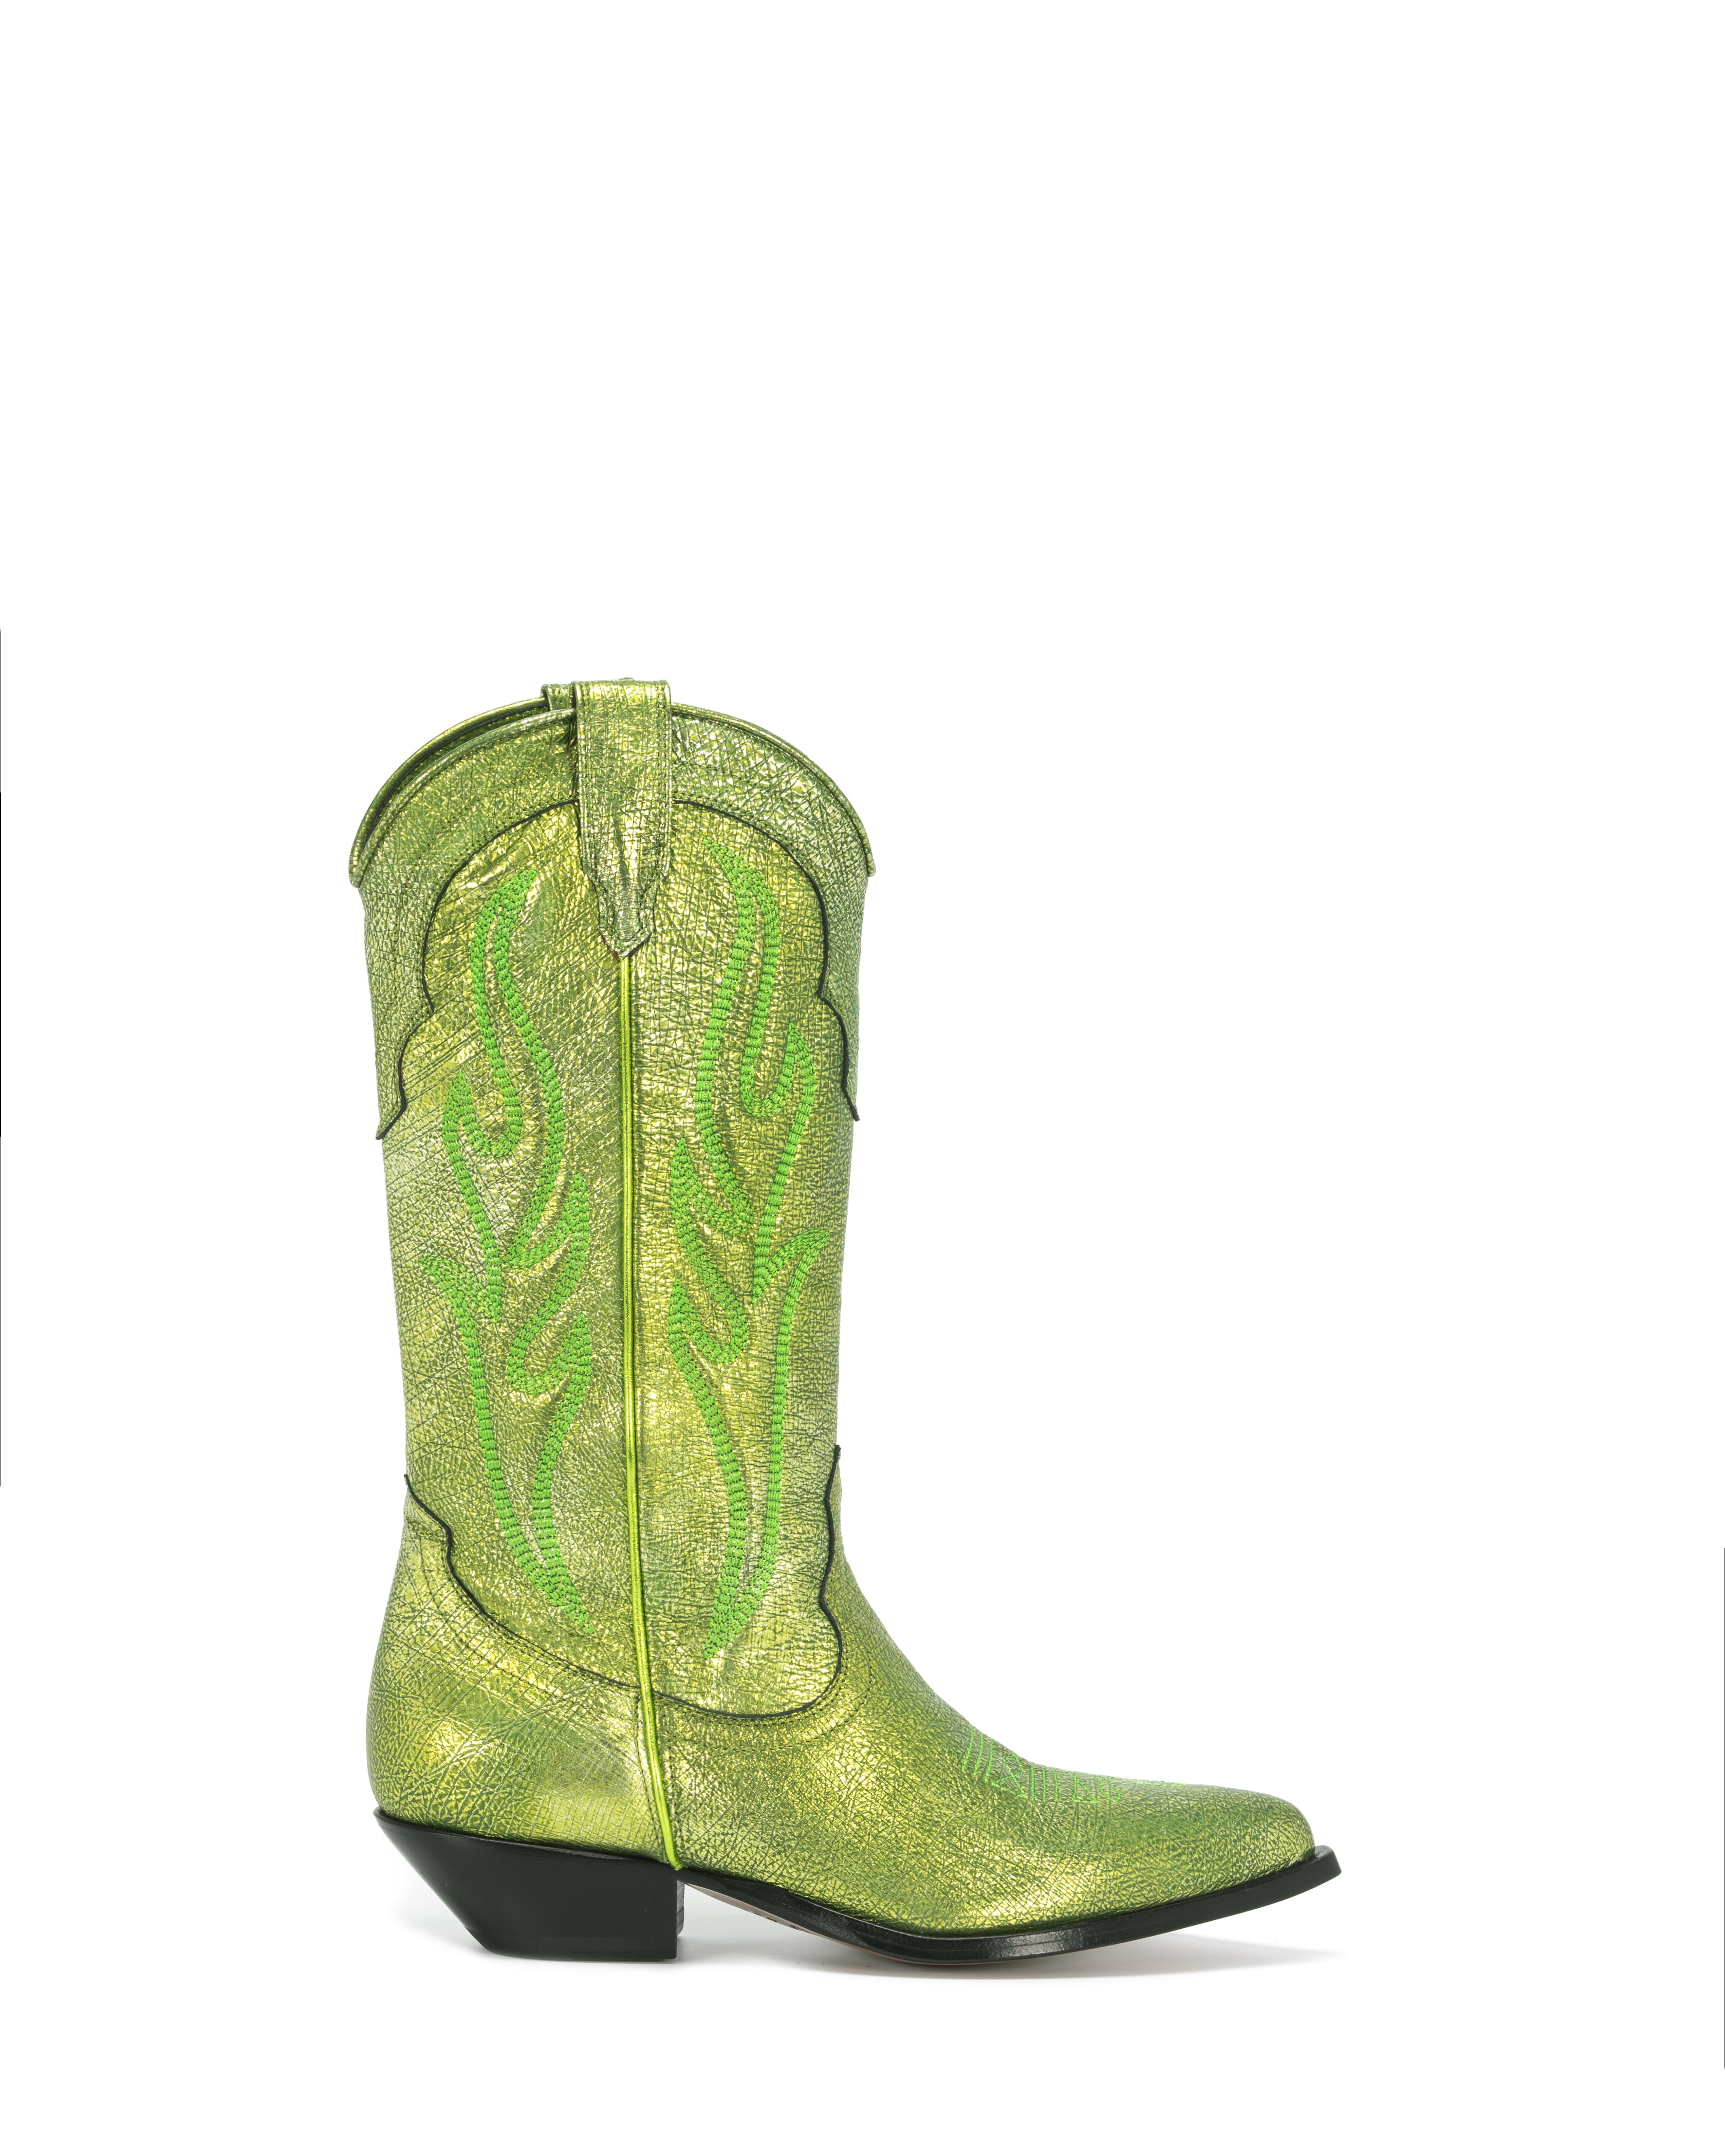 Santa Fe Laminated Cowboy Boots